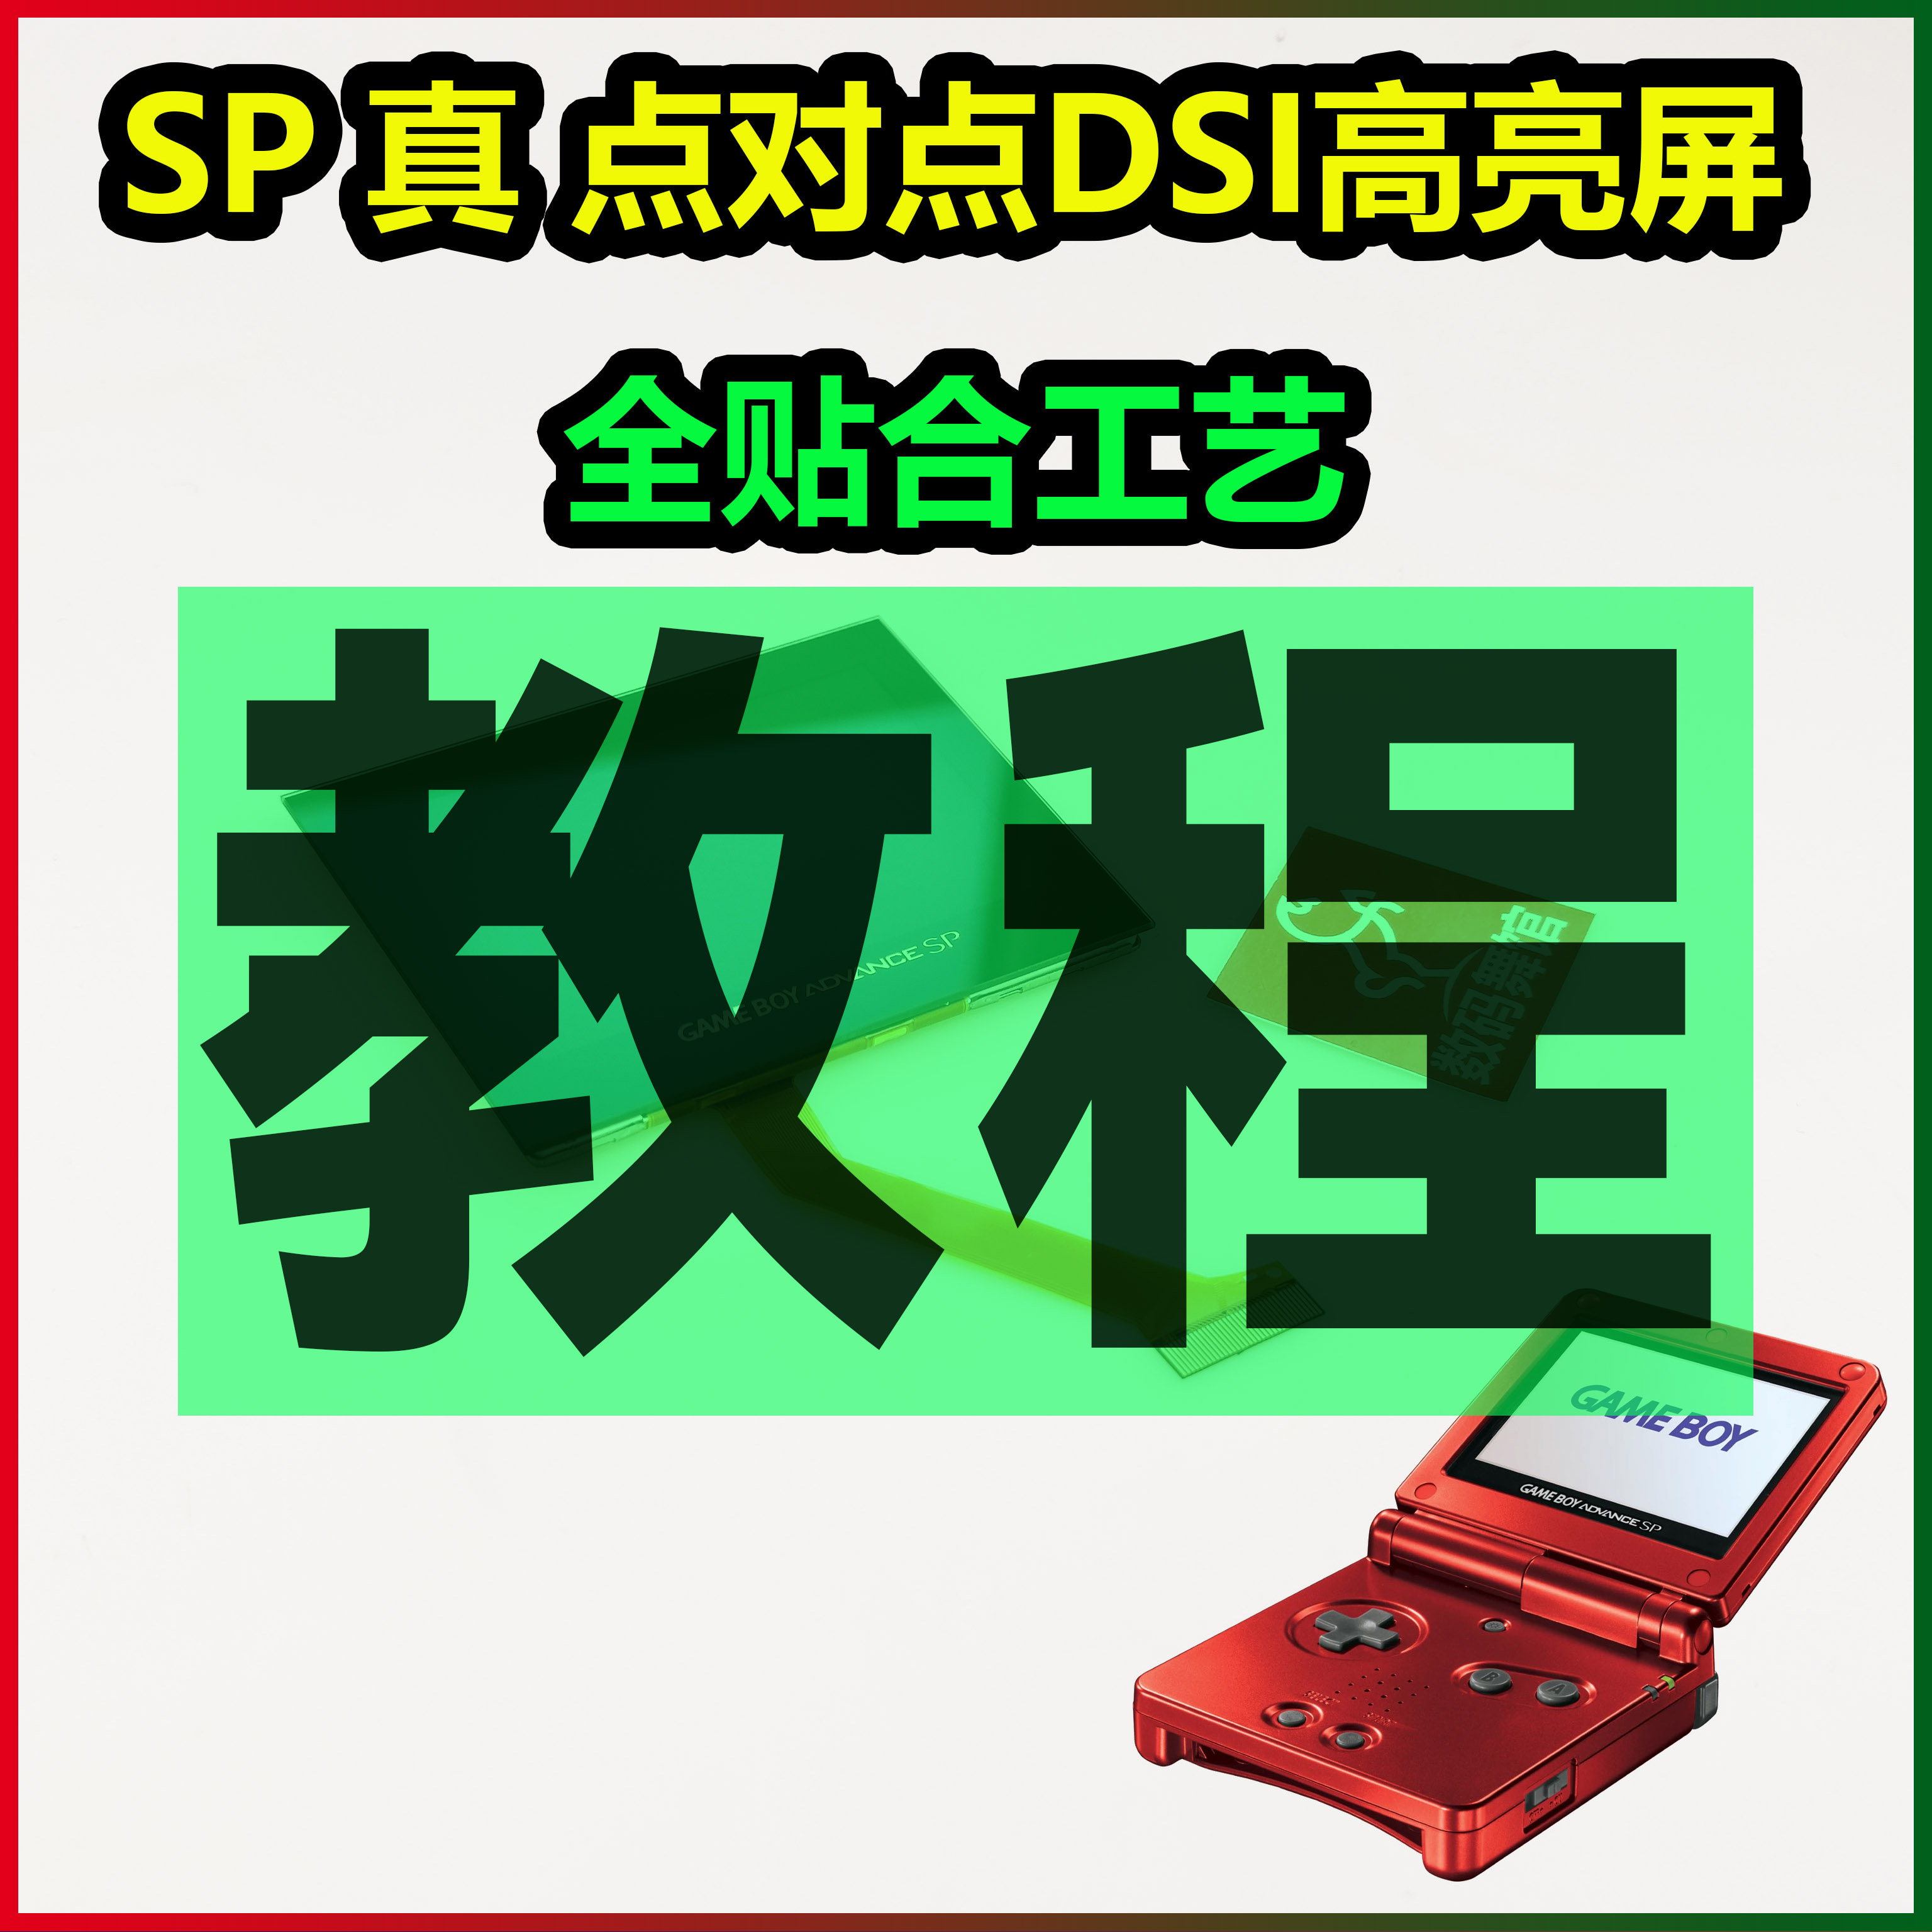 SP高亮屏DSI点对点教程